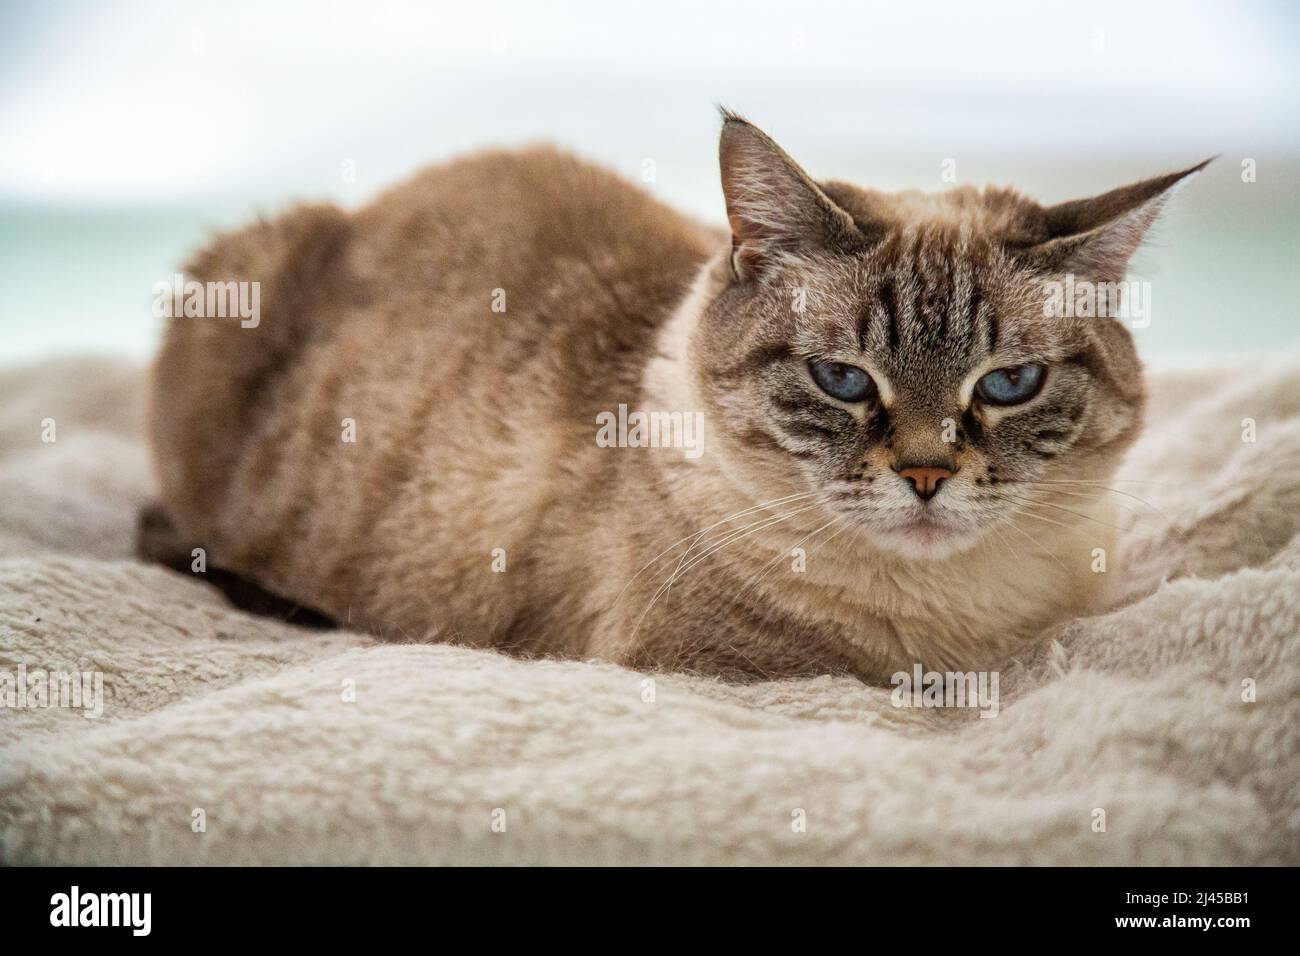 Ritratto di un animale domestico, gatto tailandese con occhi blu. Gatto thai-siamese arricciato sulla sua coperta preferita. Foto Stock